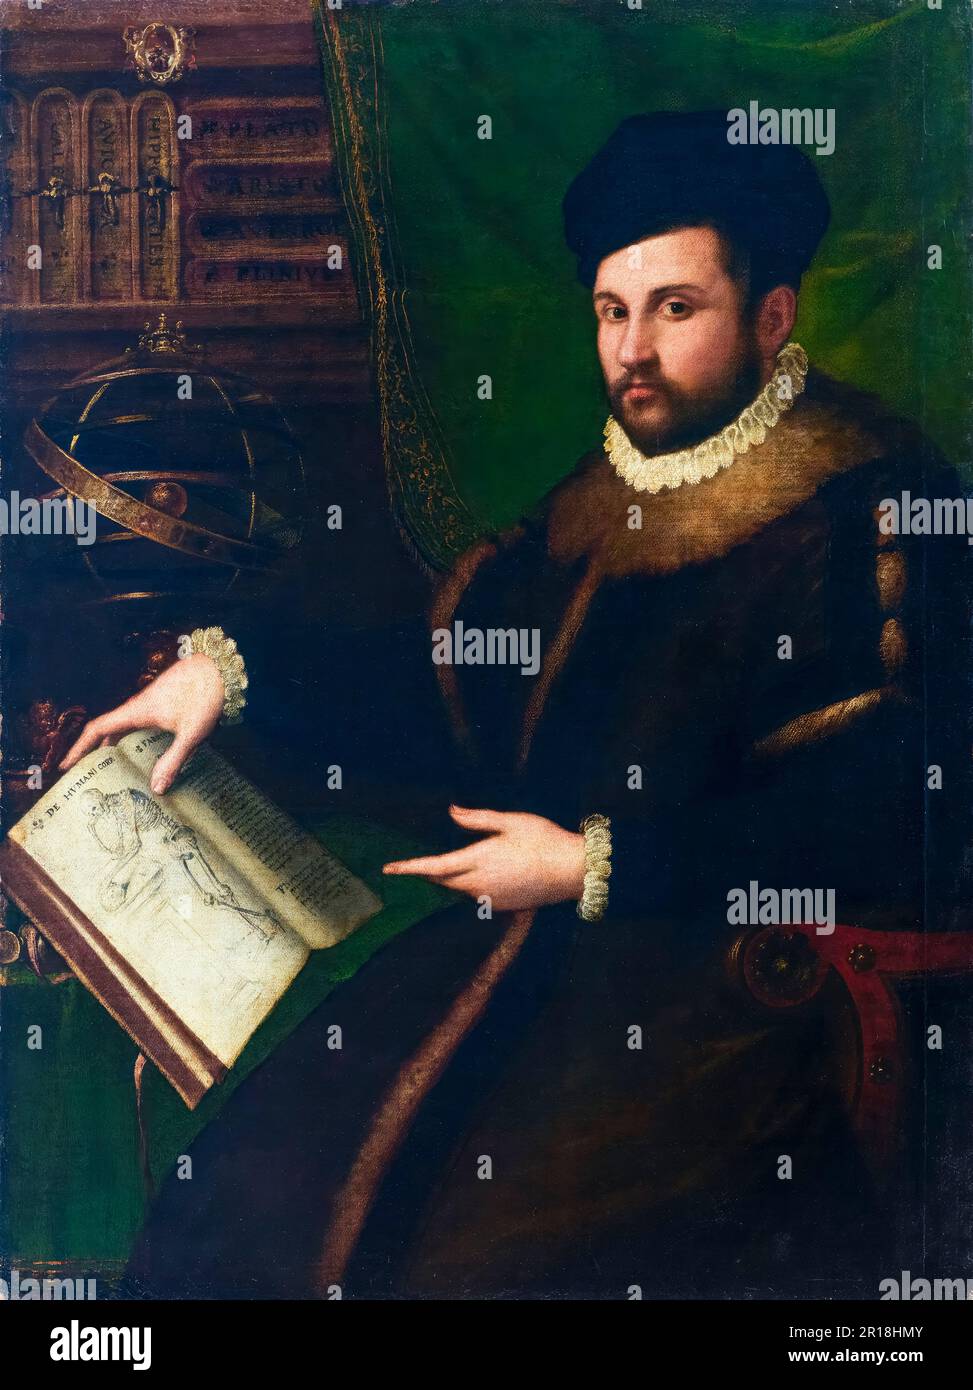 Girolamo Merricuriale (1530-1606), médecin et chercheur italien, portrait peint à l'huile sur toile par Lavinia Fontana, 1588-1589 Banque D'Images